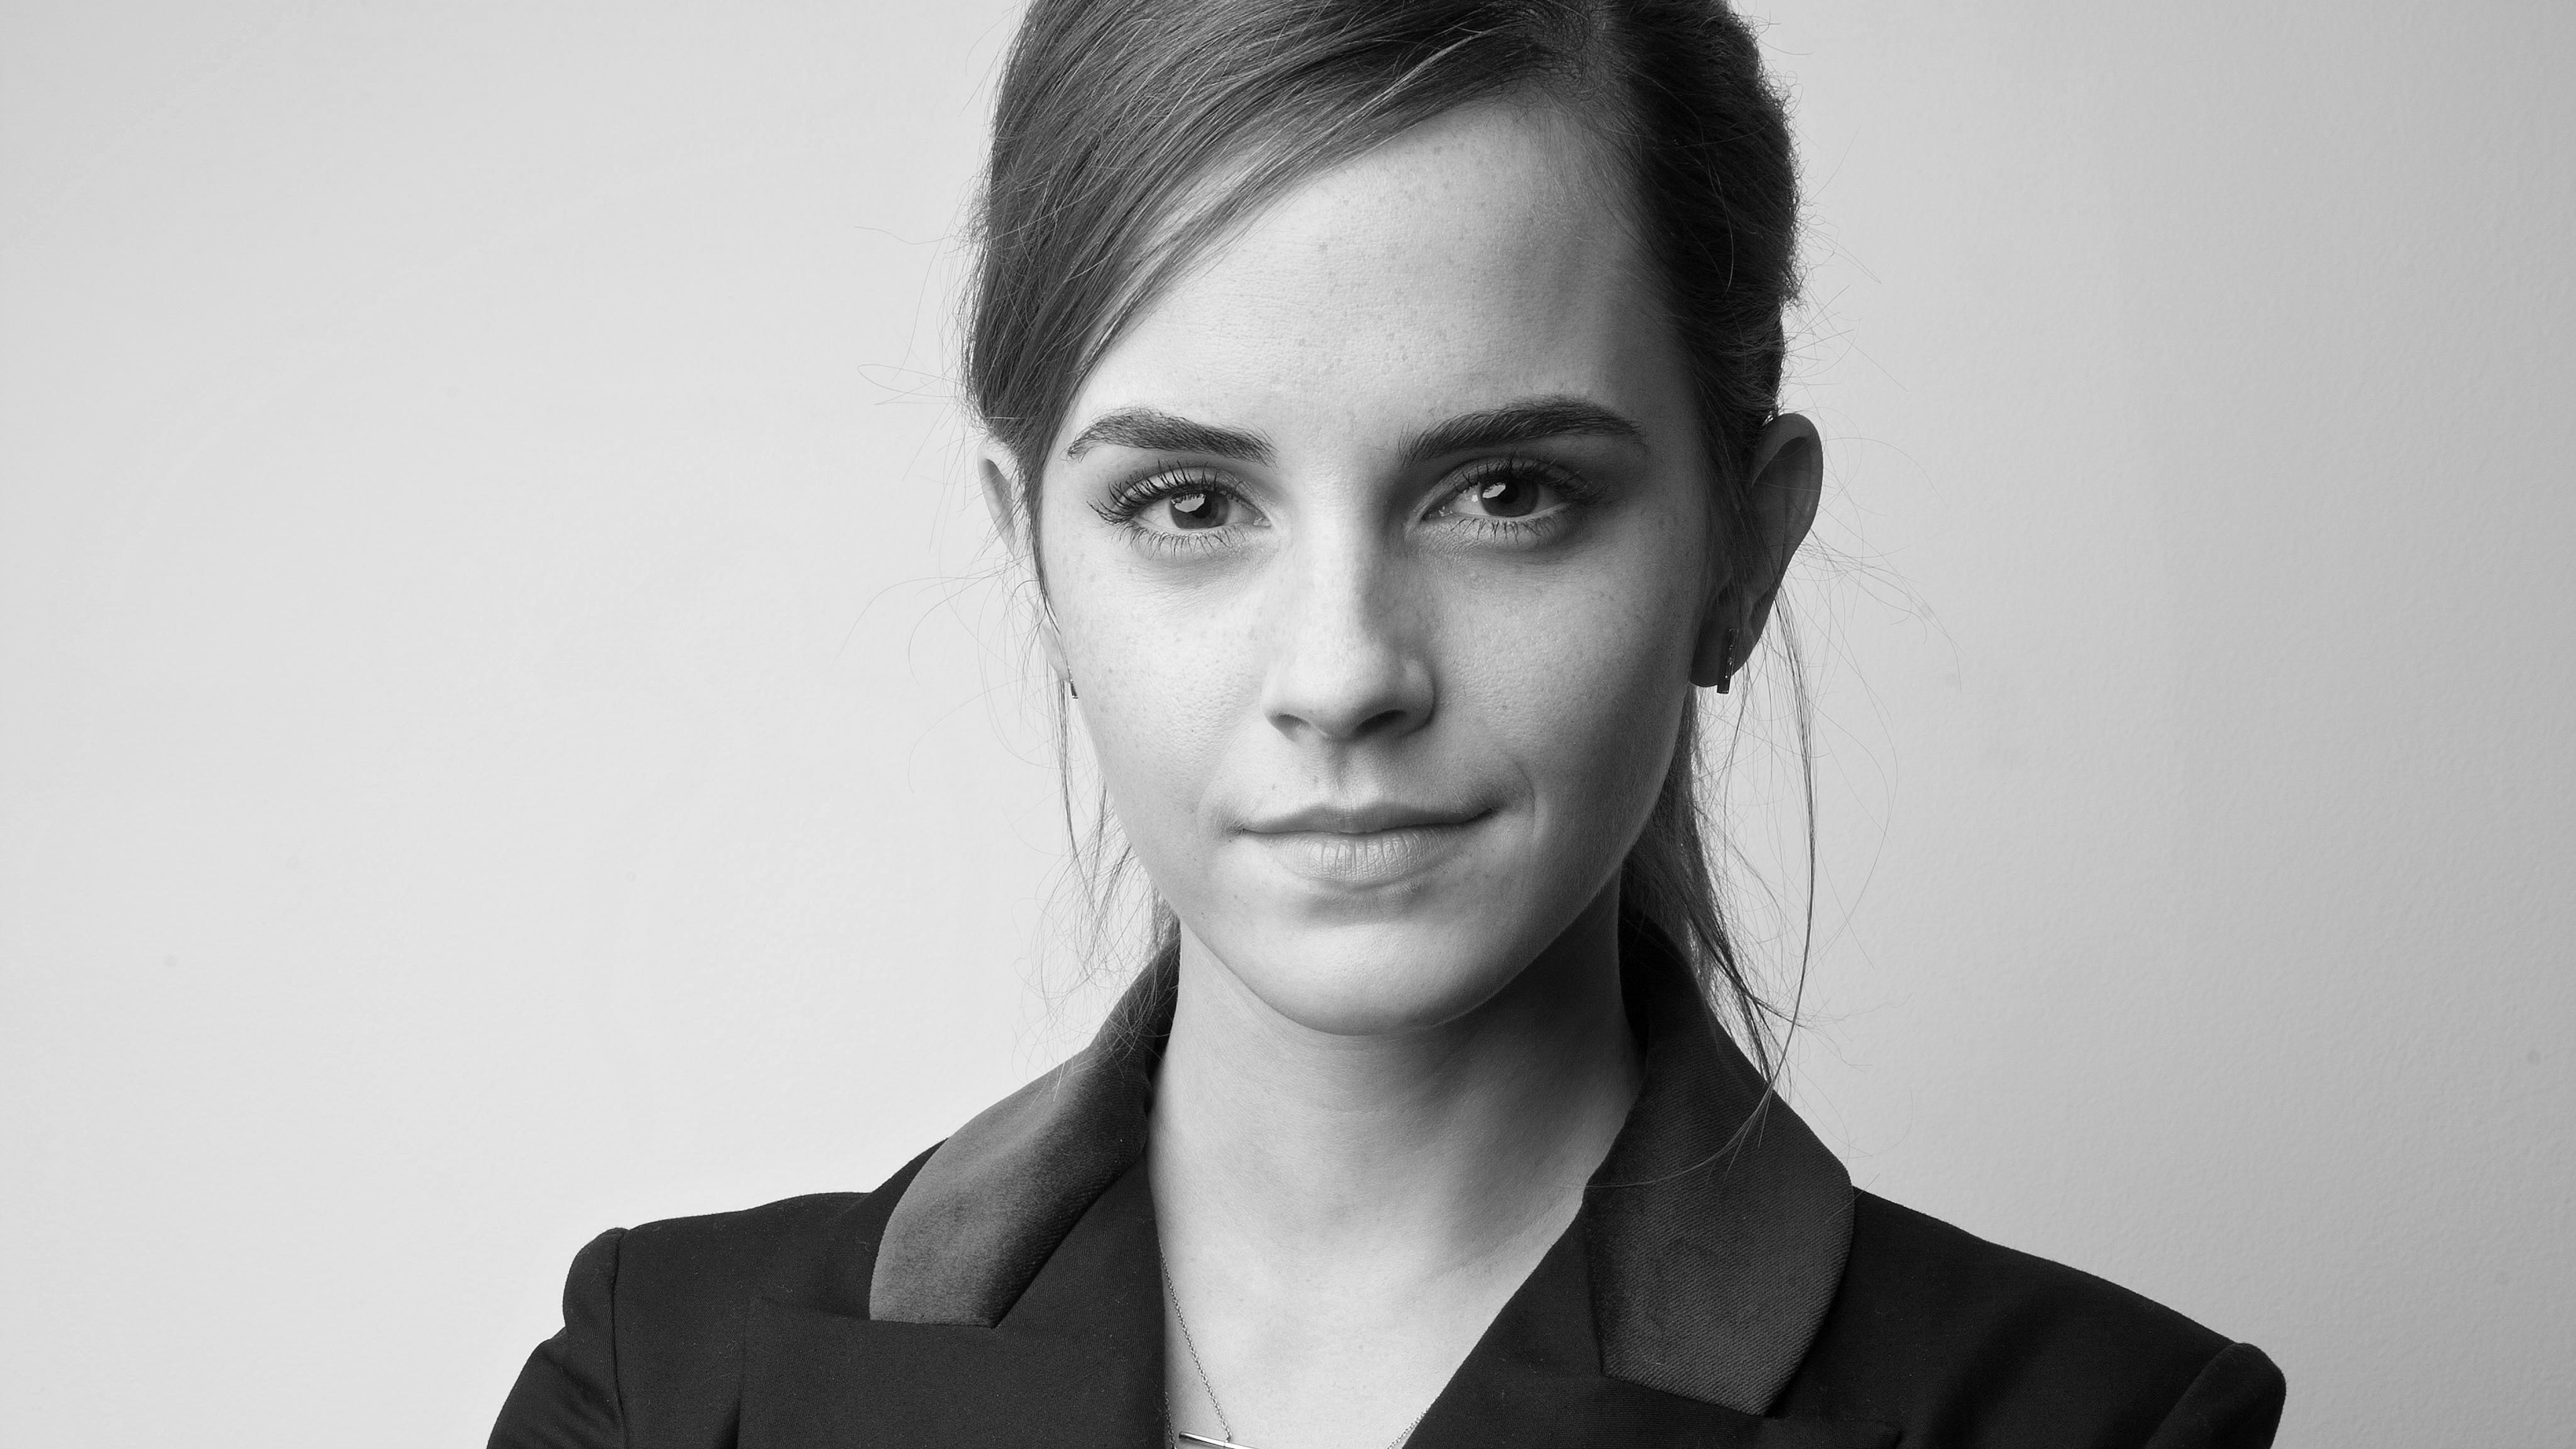 Emma Watson Monochrome Portrait Wallpapers